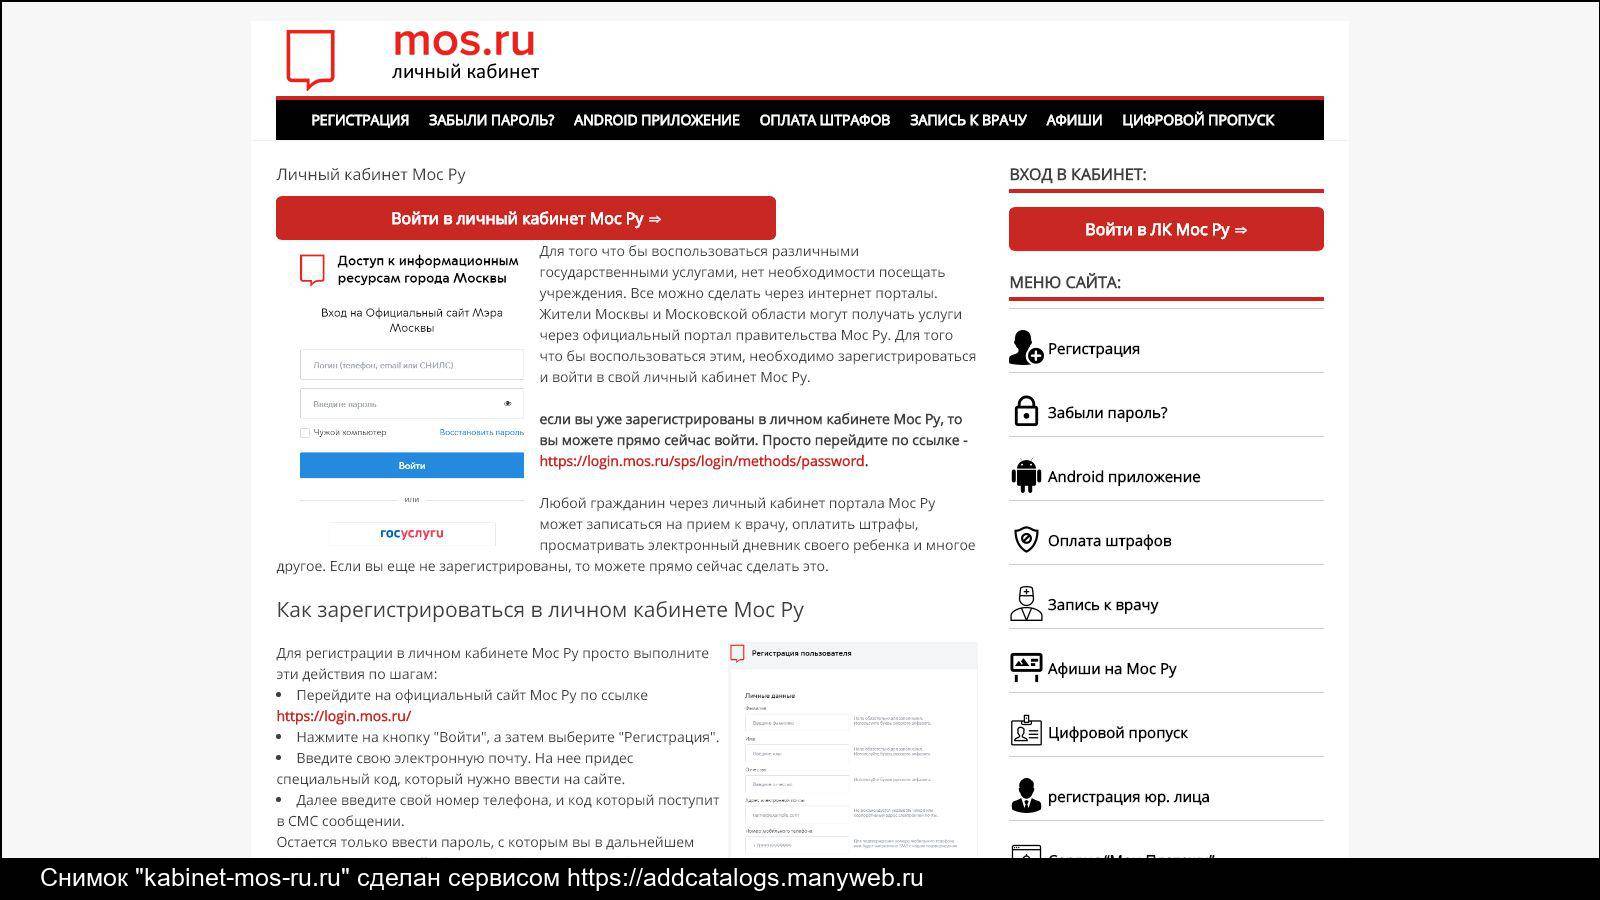 Личный кабинет на портале MOS.RU: лайфхаки для пользователей